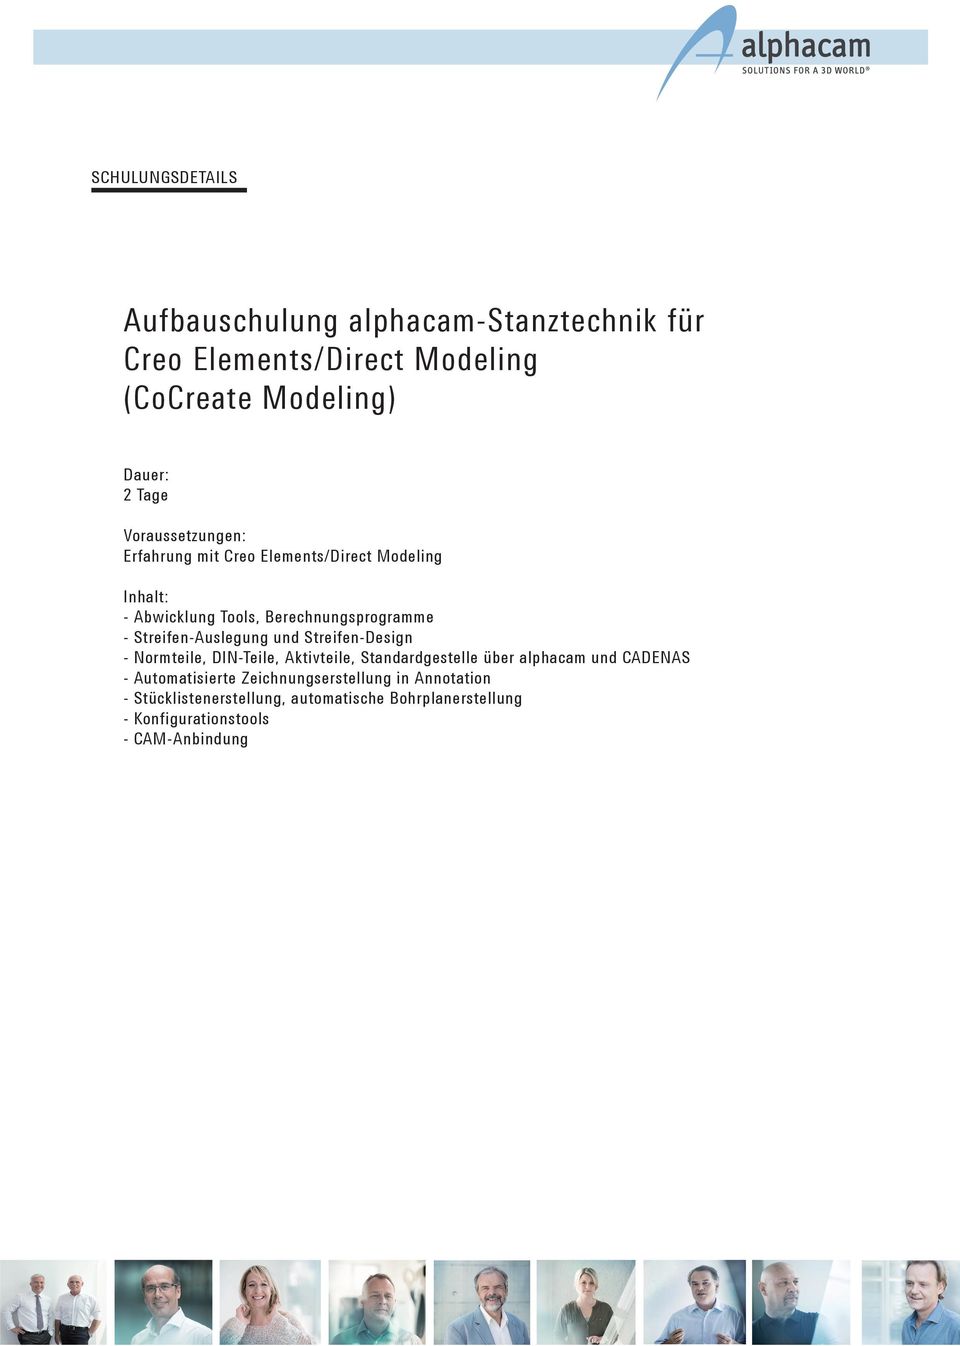 Streifen-Auslegung und Streifen-Design - Normteile, DIN-Teile, Aktivteile, Standardgestelle über alphacam und CADENAS -